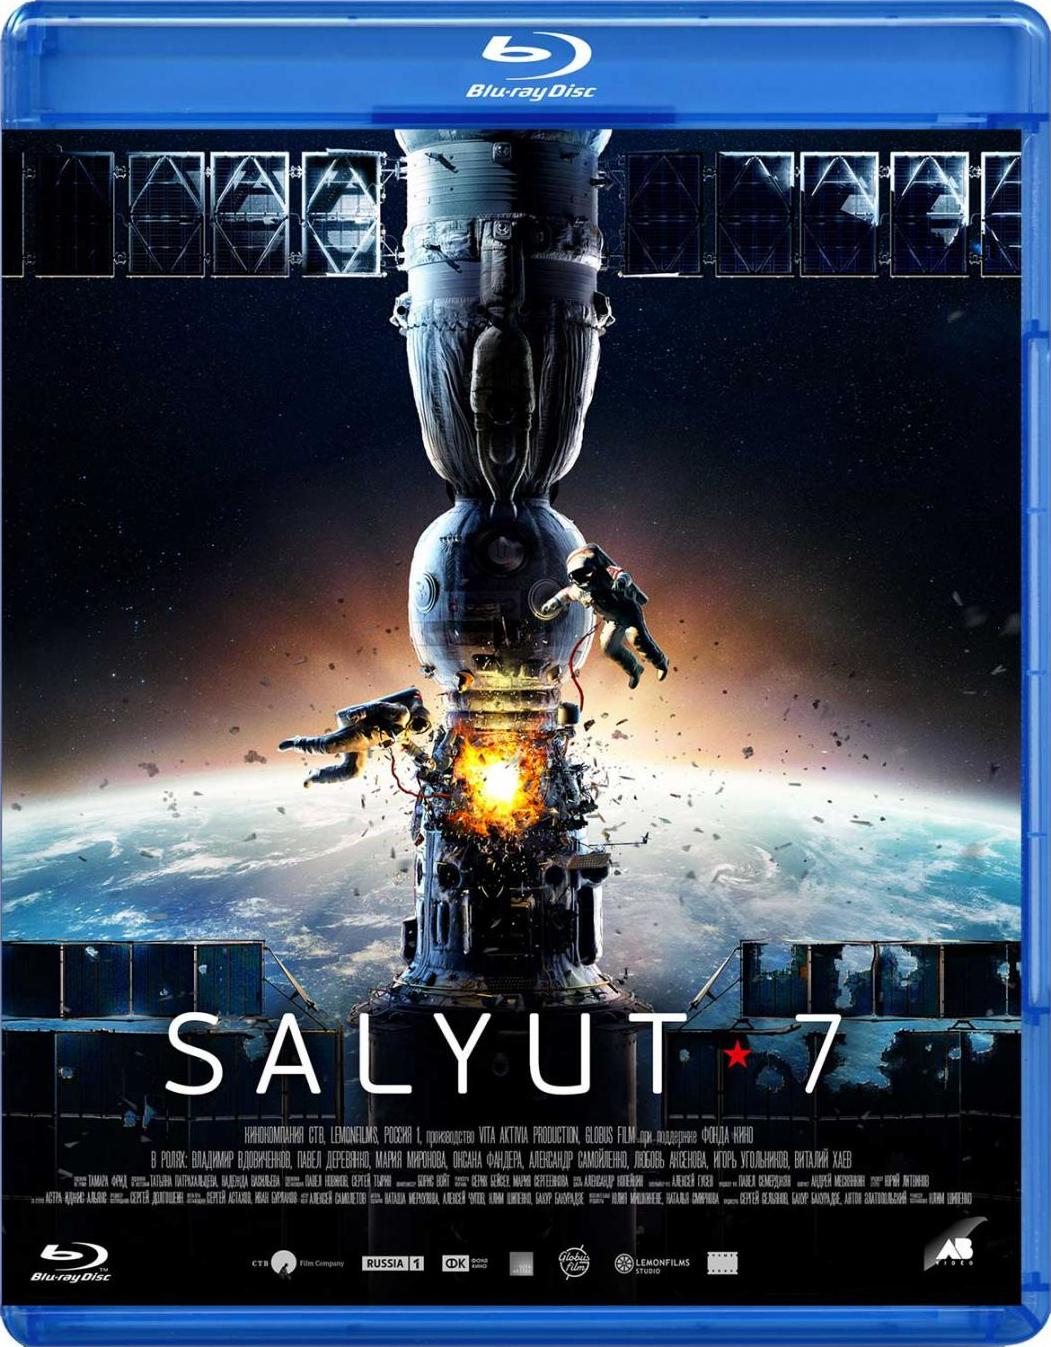 [太空救援].Salyut-7.2017.3D.BluRay.1080p.AVC.DTS-HD.MA.5.1-BLUEBIRD   32.73G-1.jpg